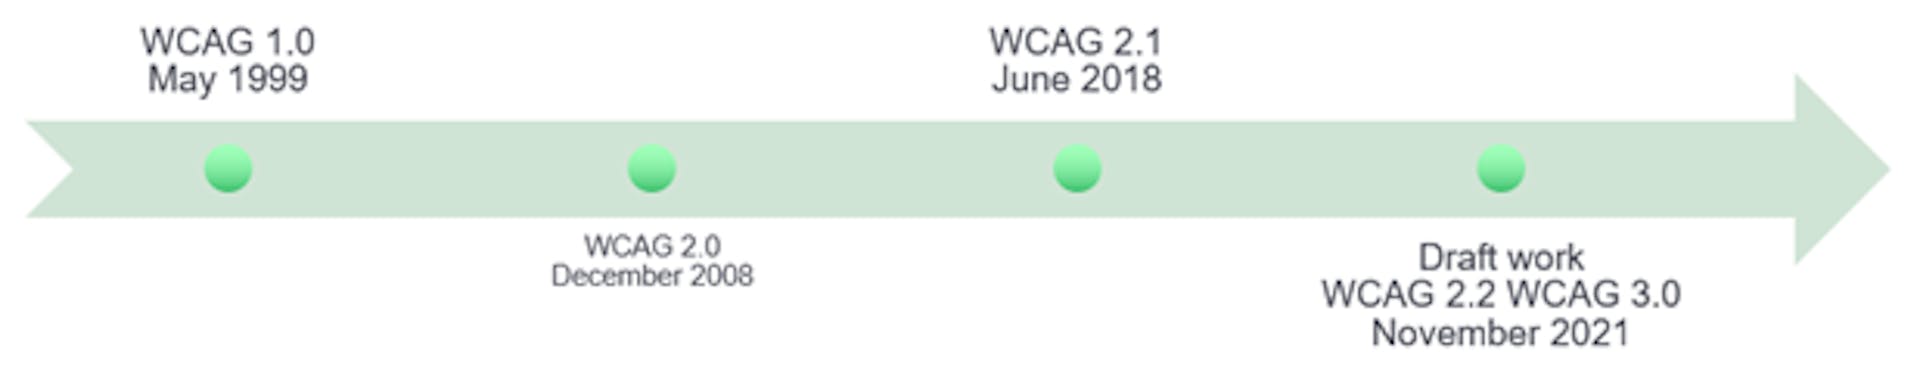 Hình ảnh mô tả quá trình phát triển của hướng dẫn tiếp cận WCAG